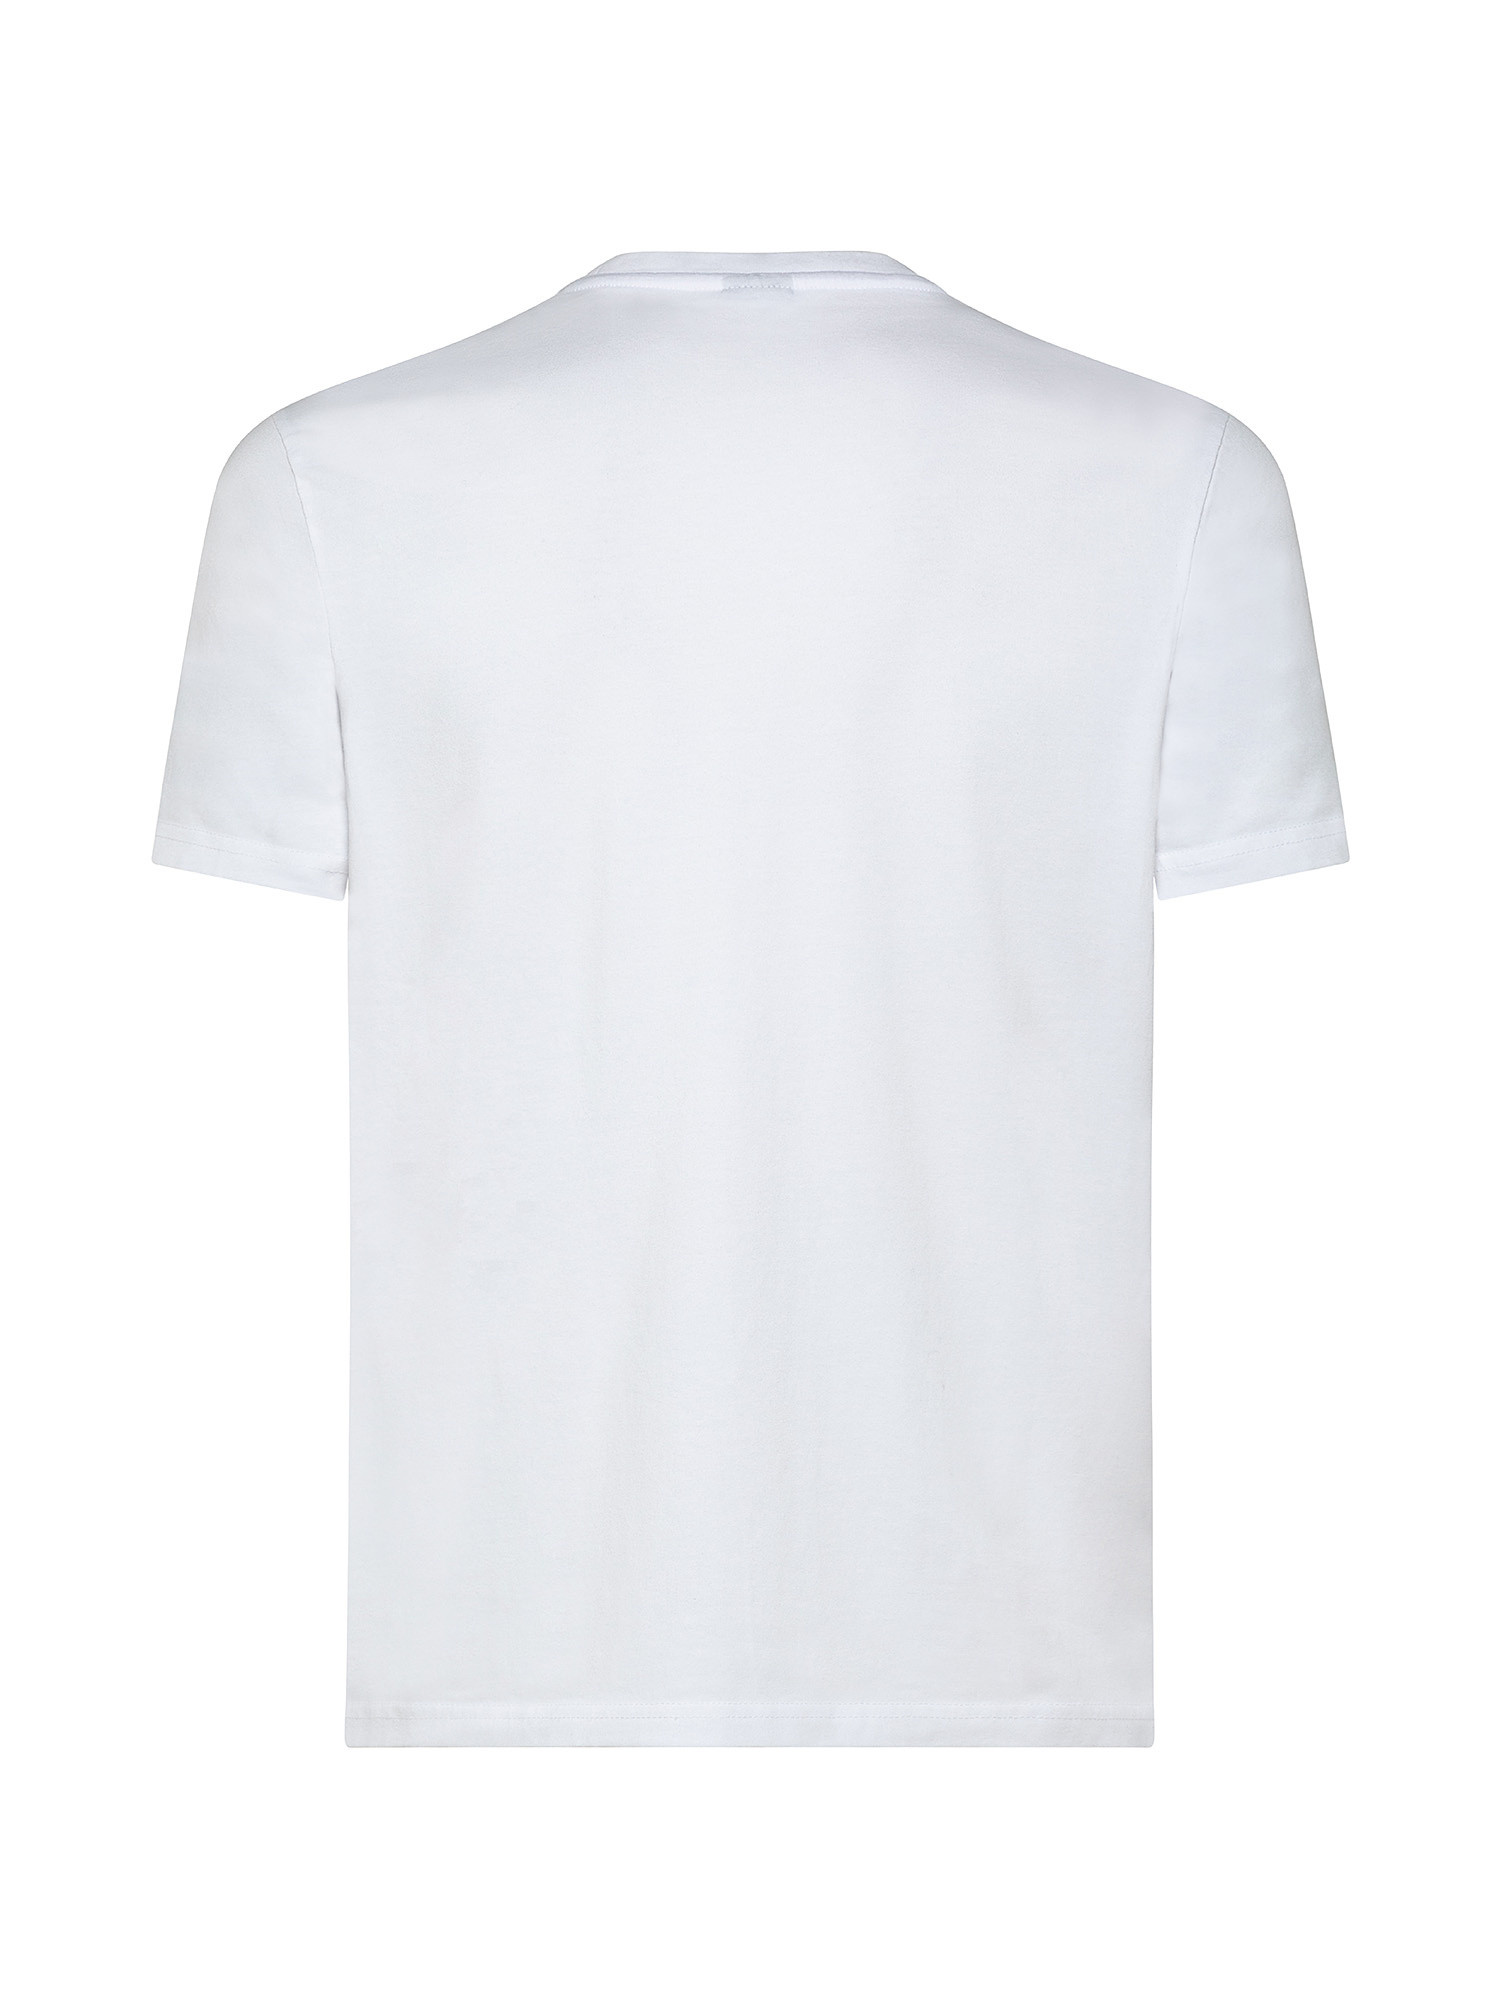 Short sleeve t-shirt with logo, White, large image number 1